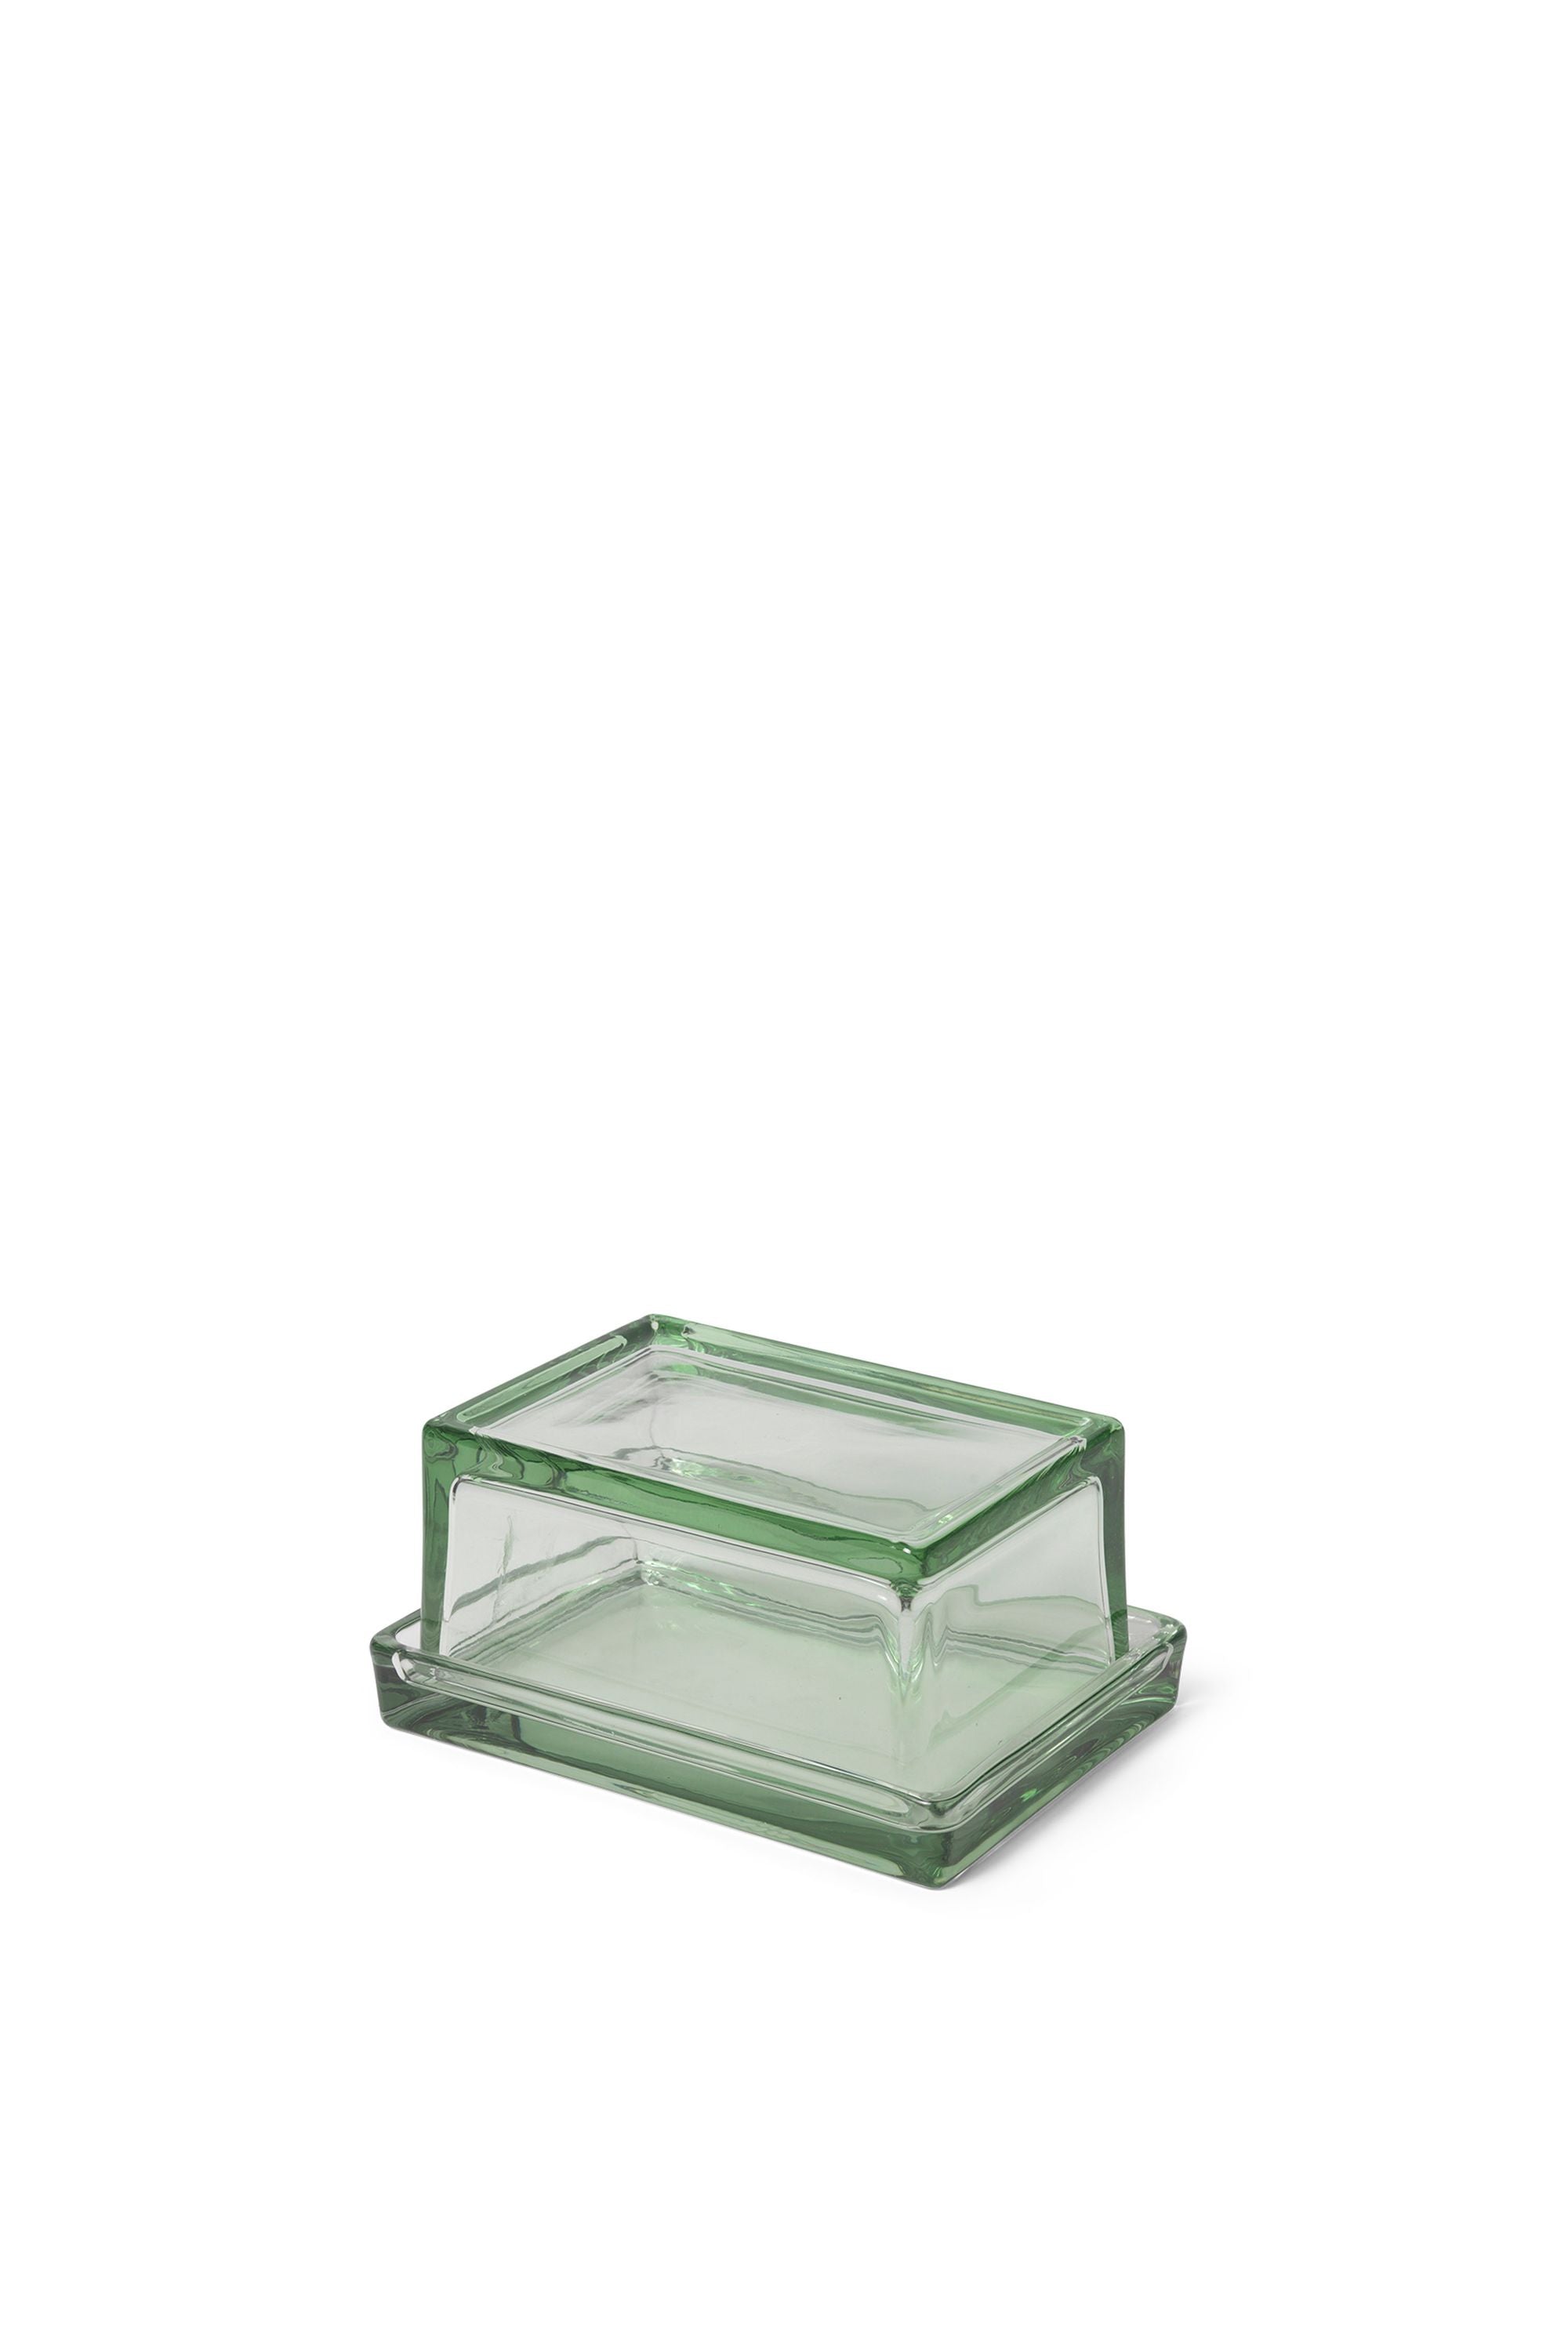 Caja de Ferm Living Oli, reciclado transparente